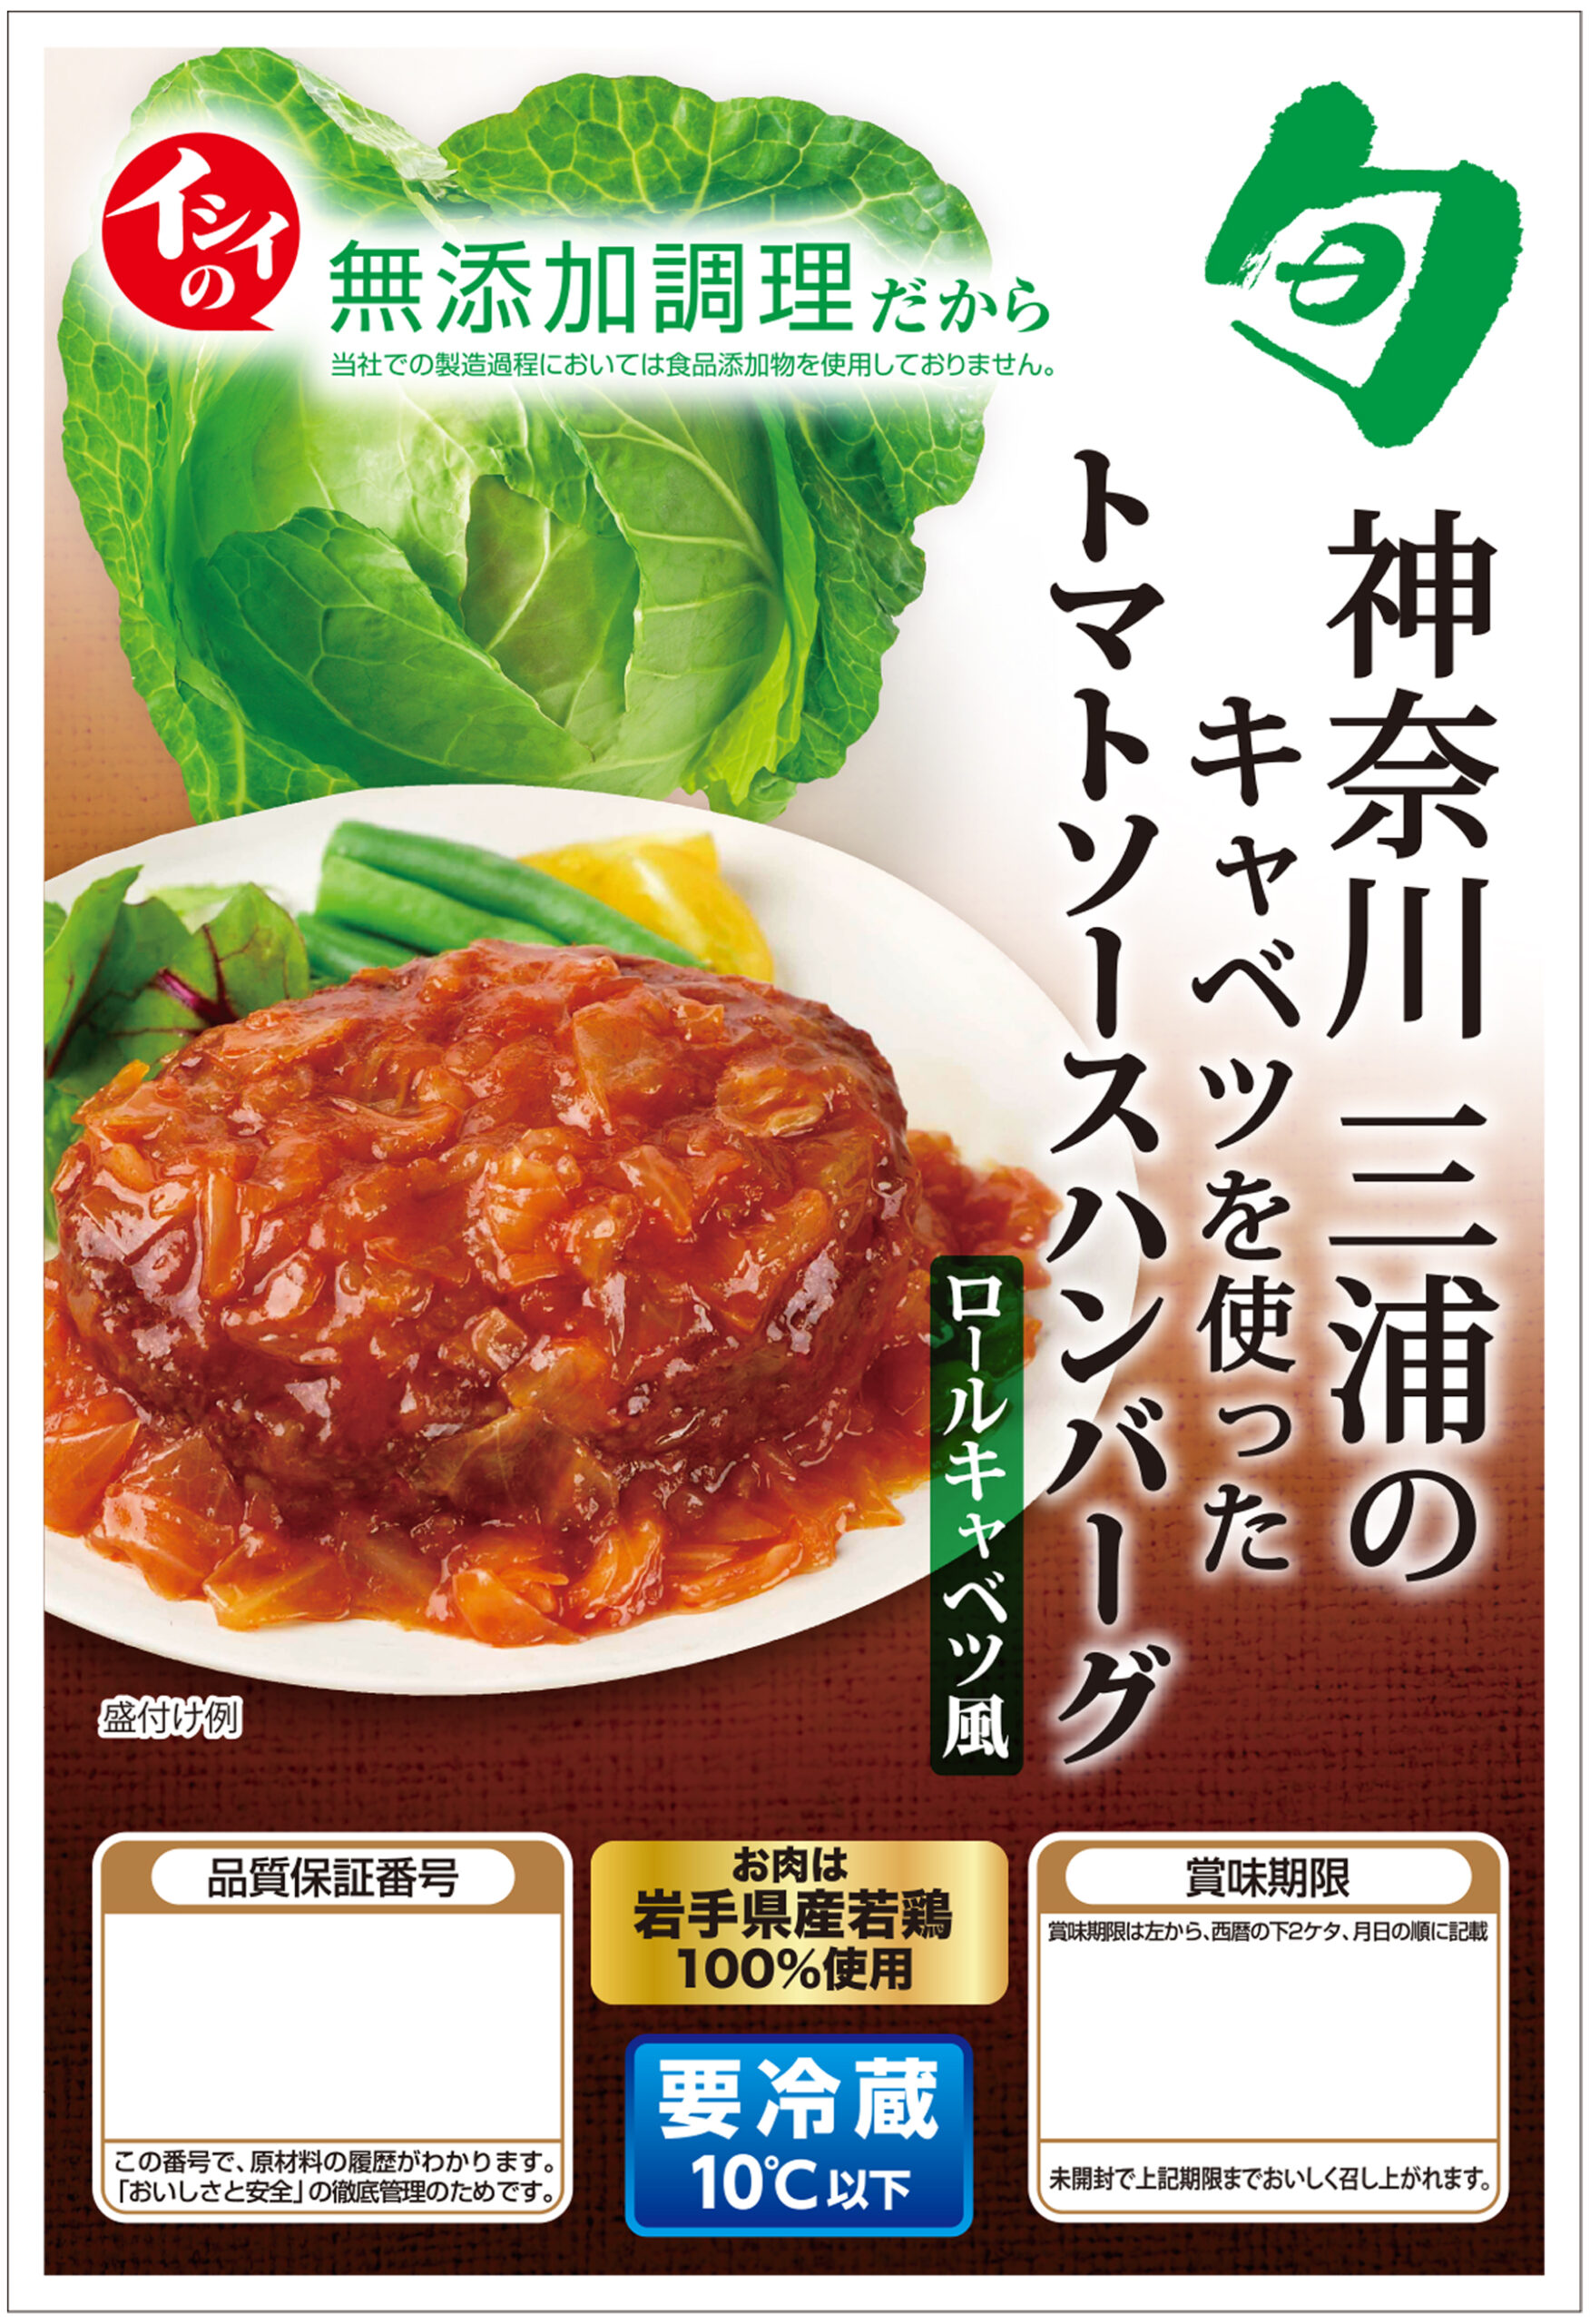 神奈川県三浦のキャベツを使ったトマトソースハンバーグ ロールキャベツ風